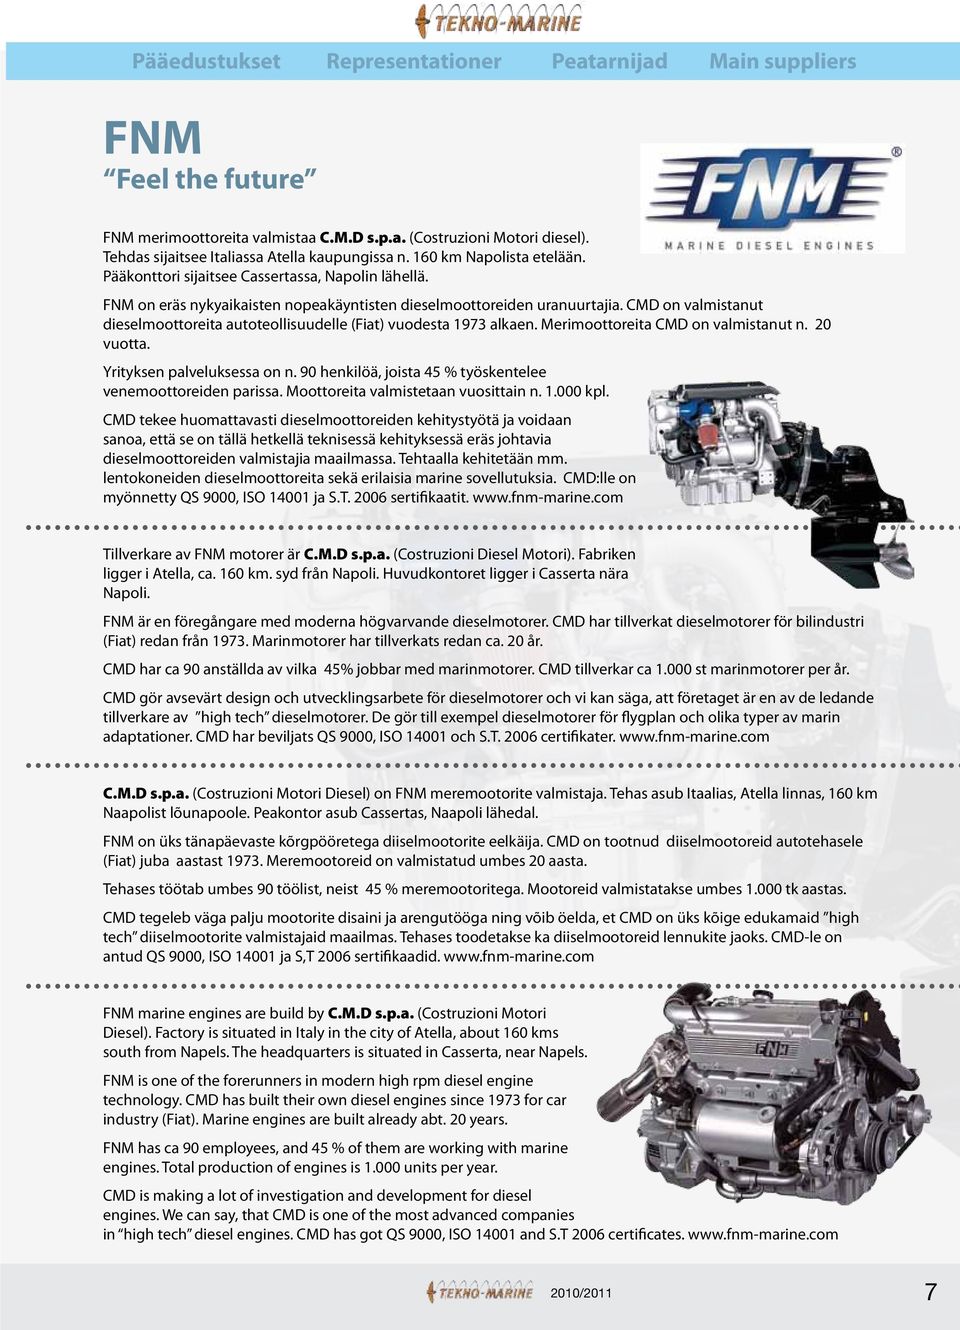 CMD on valmistanut dieselmoottoreita autoteollisuudelle (Fiat) vuodesta 1973 alkaen. Merimoottoreita CMD on valmistanut n. 20 vuotta. Yrityksen palveluksessa on n.